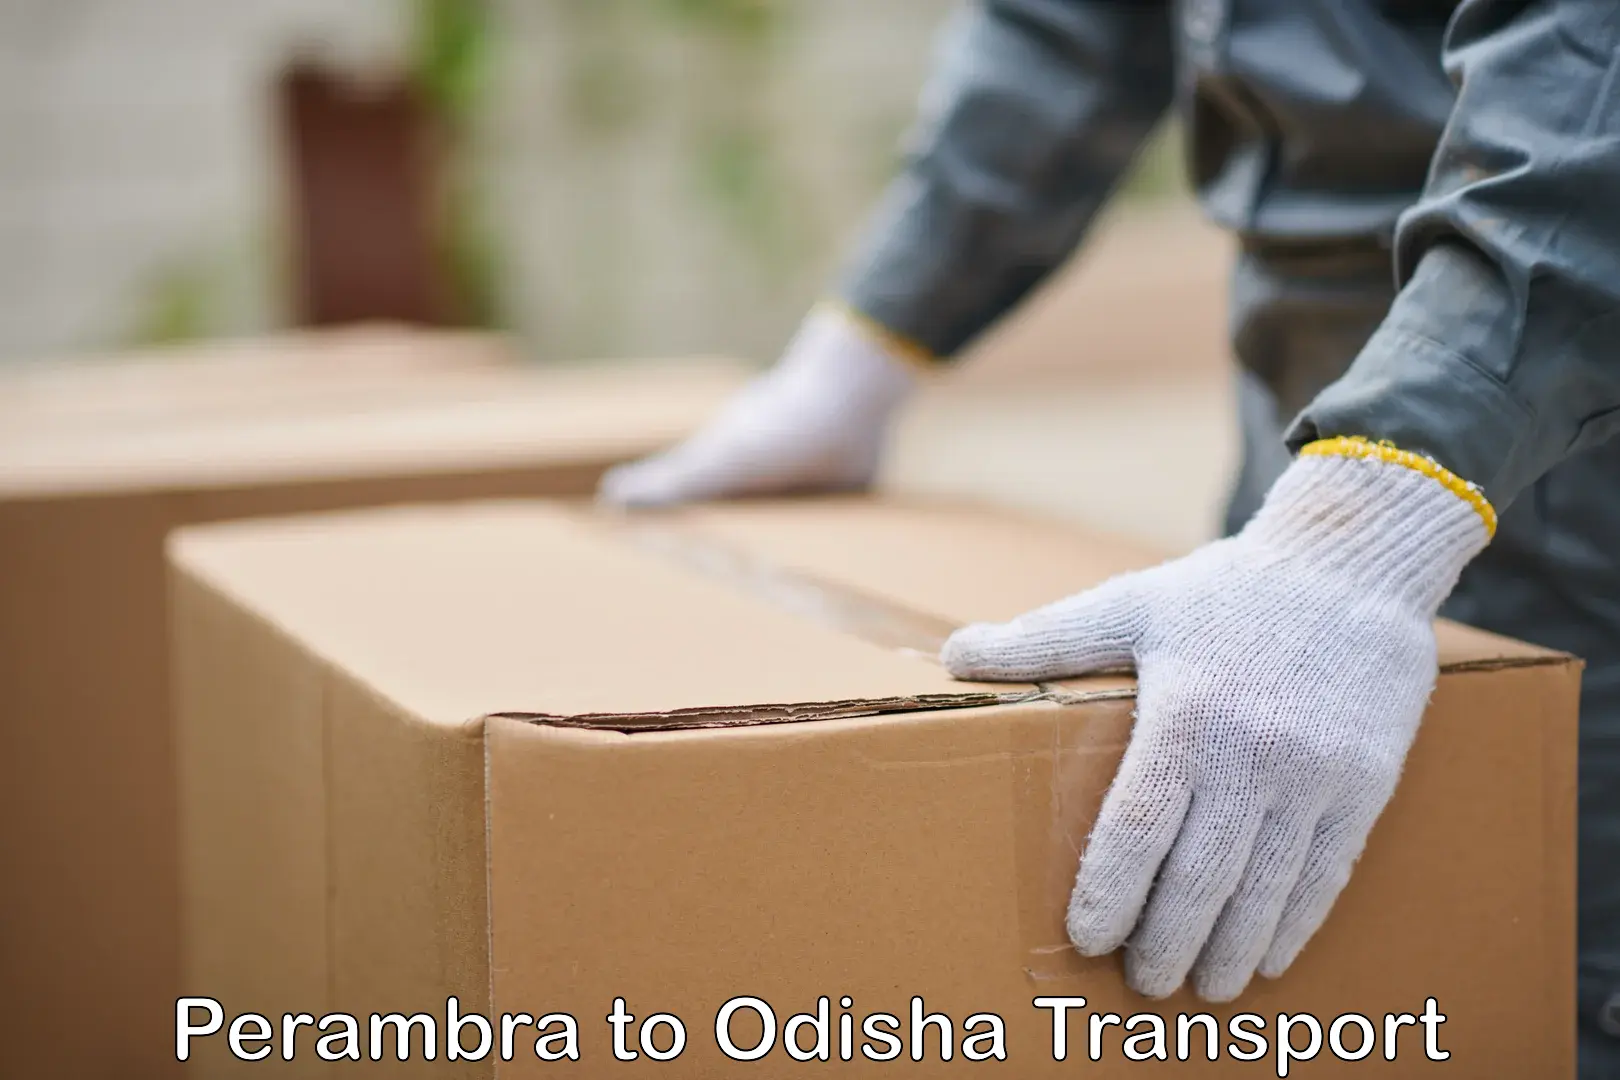 Furniture transport service Perambra to Angul